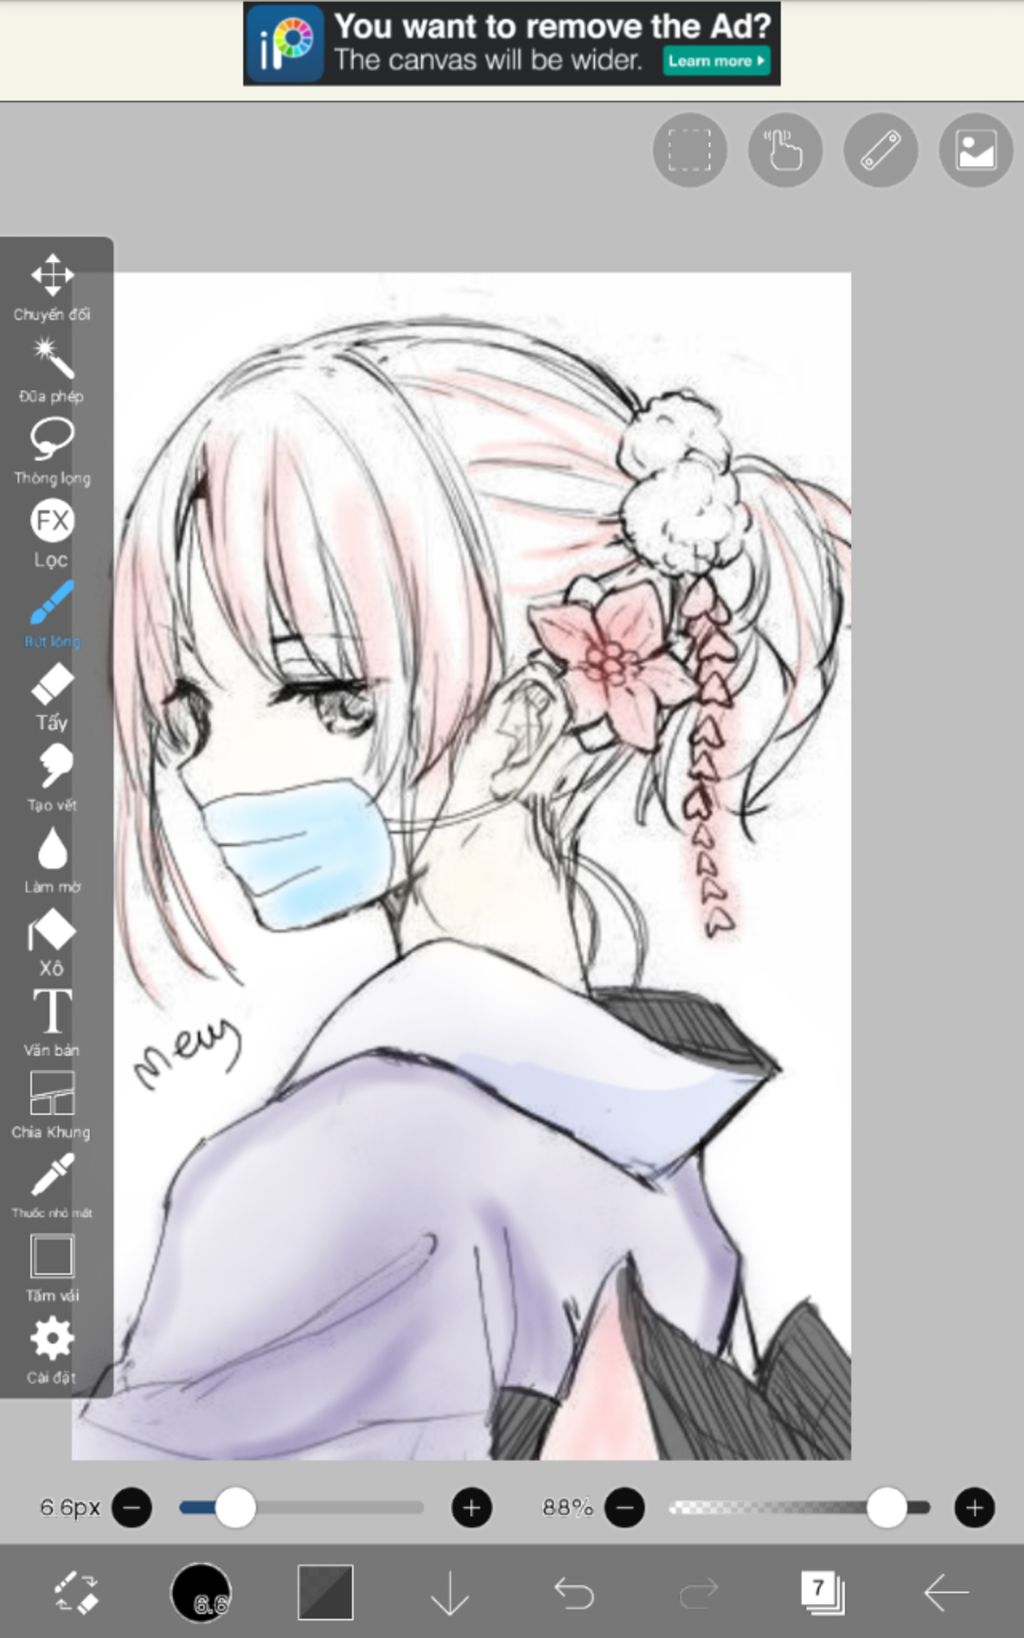 Vẽ anime nữ giới - Đeo khẩu trang y tế - Tóc ngắn ngủi, tóc với 2 màu sắc - Vẽ góc ...